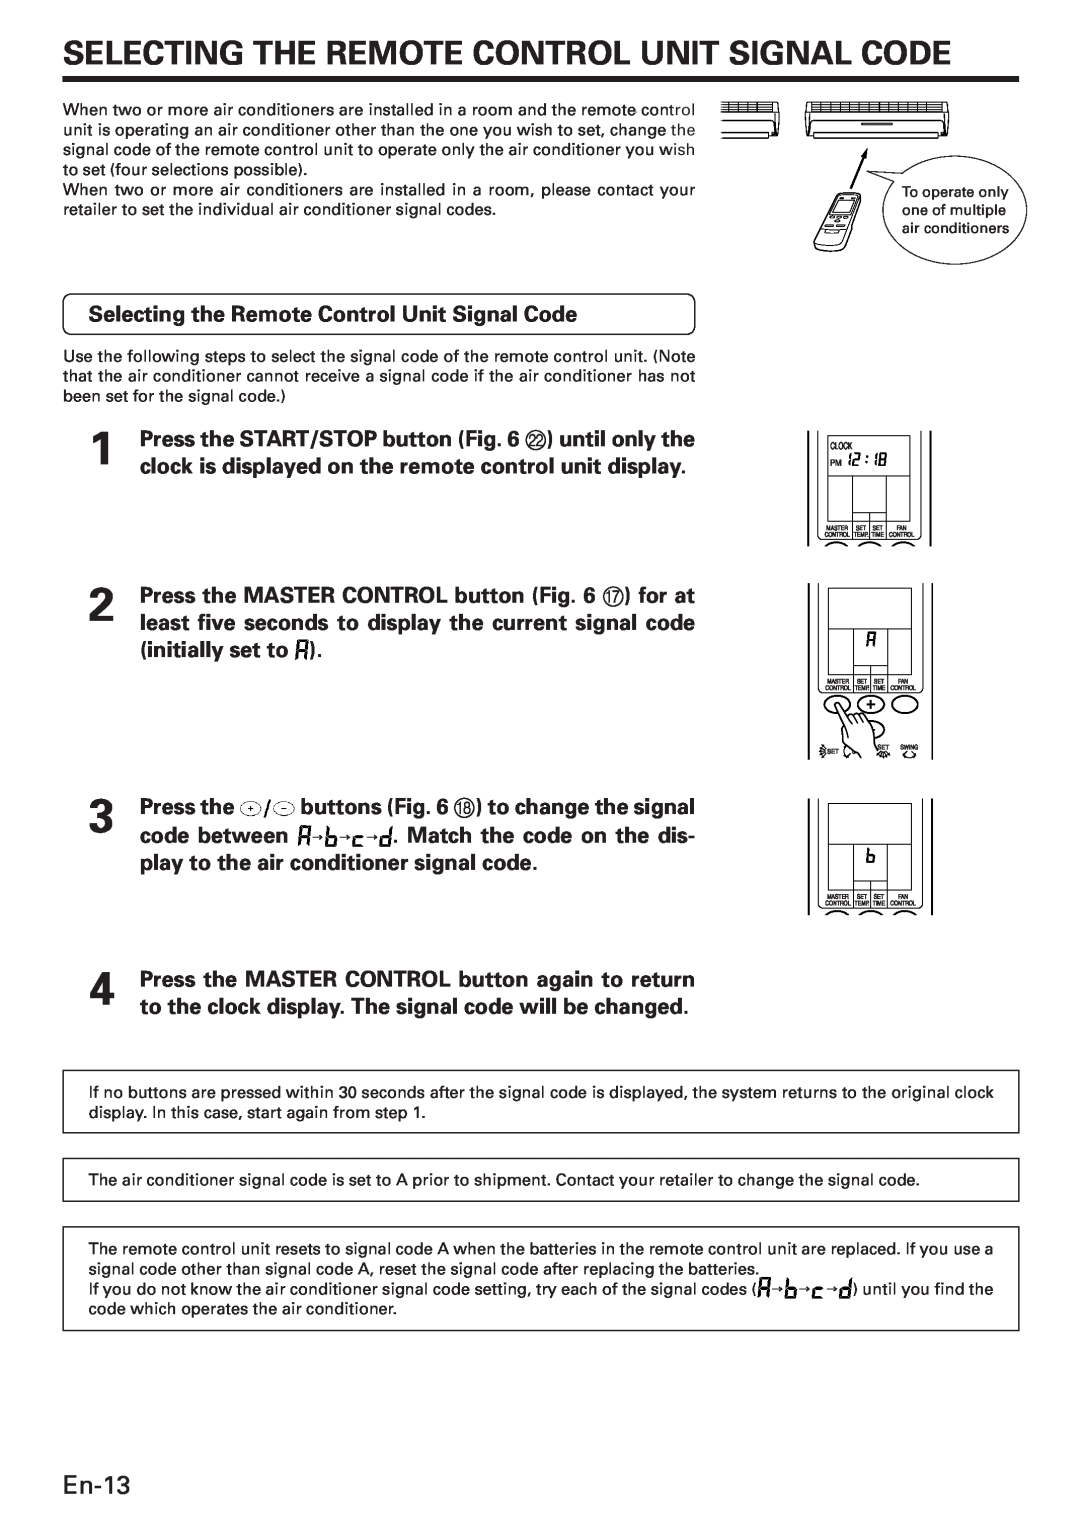 Fujitsu AWU36CX manual Selecting The Remote Control Unit Signal Code, En-13, Selecting the Remote Control Unit Signal Code 